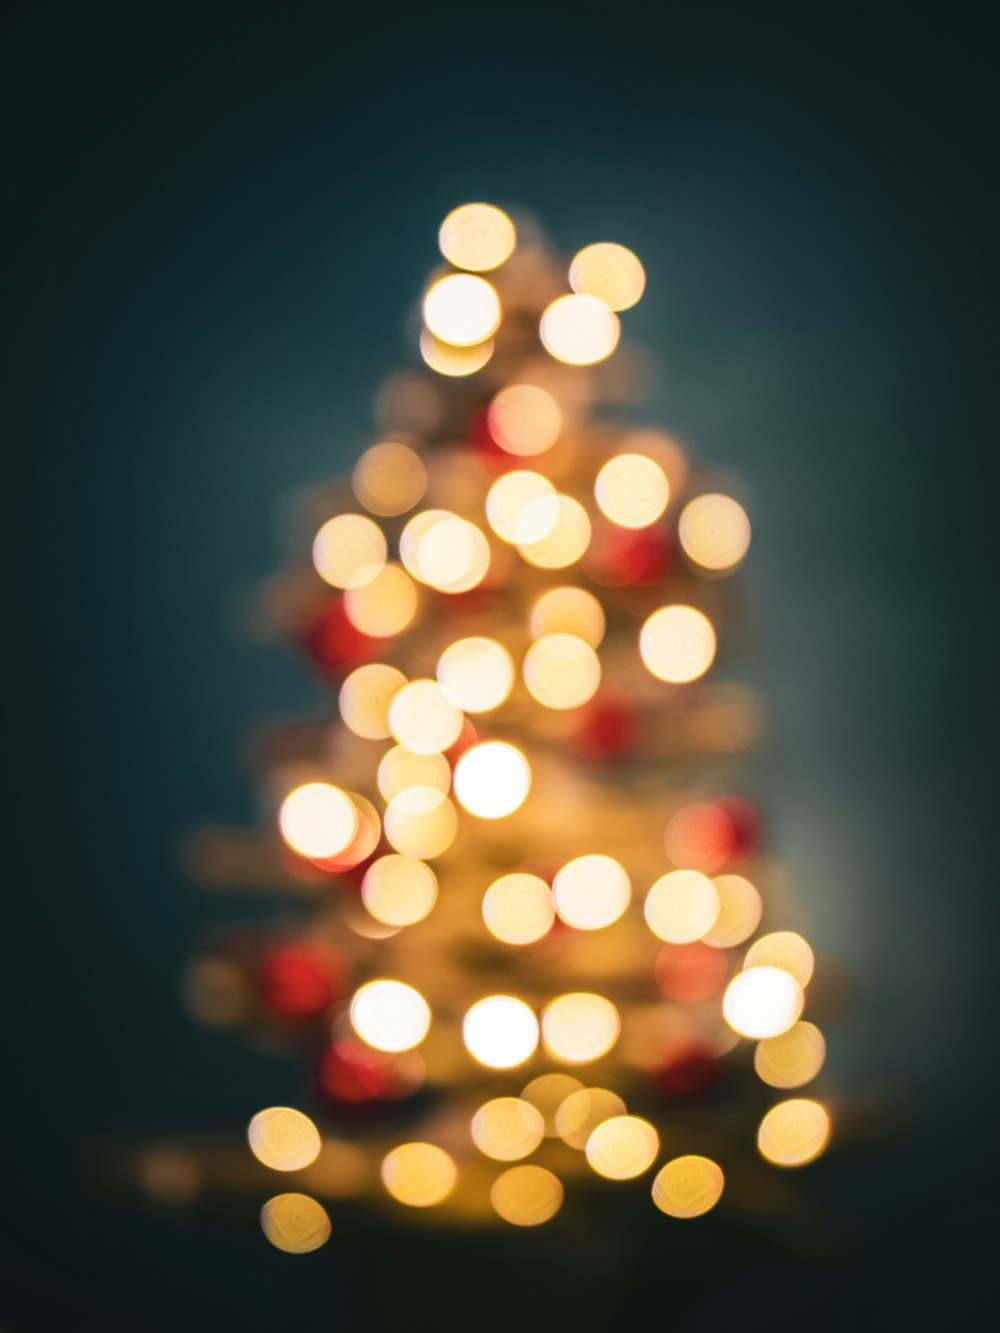 Uma pequena árvore de Natal com luzes sobre ela